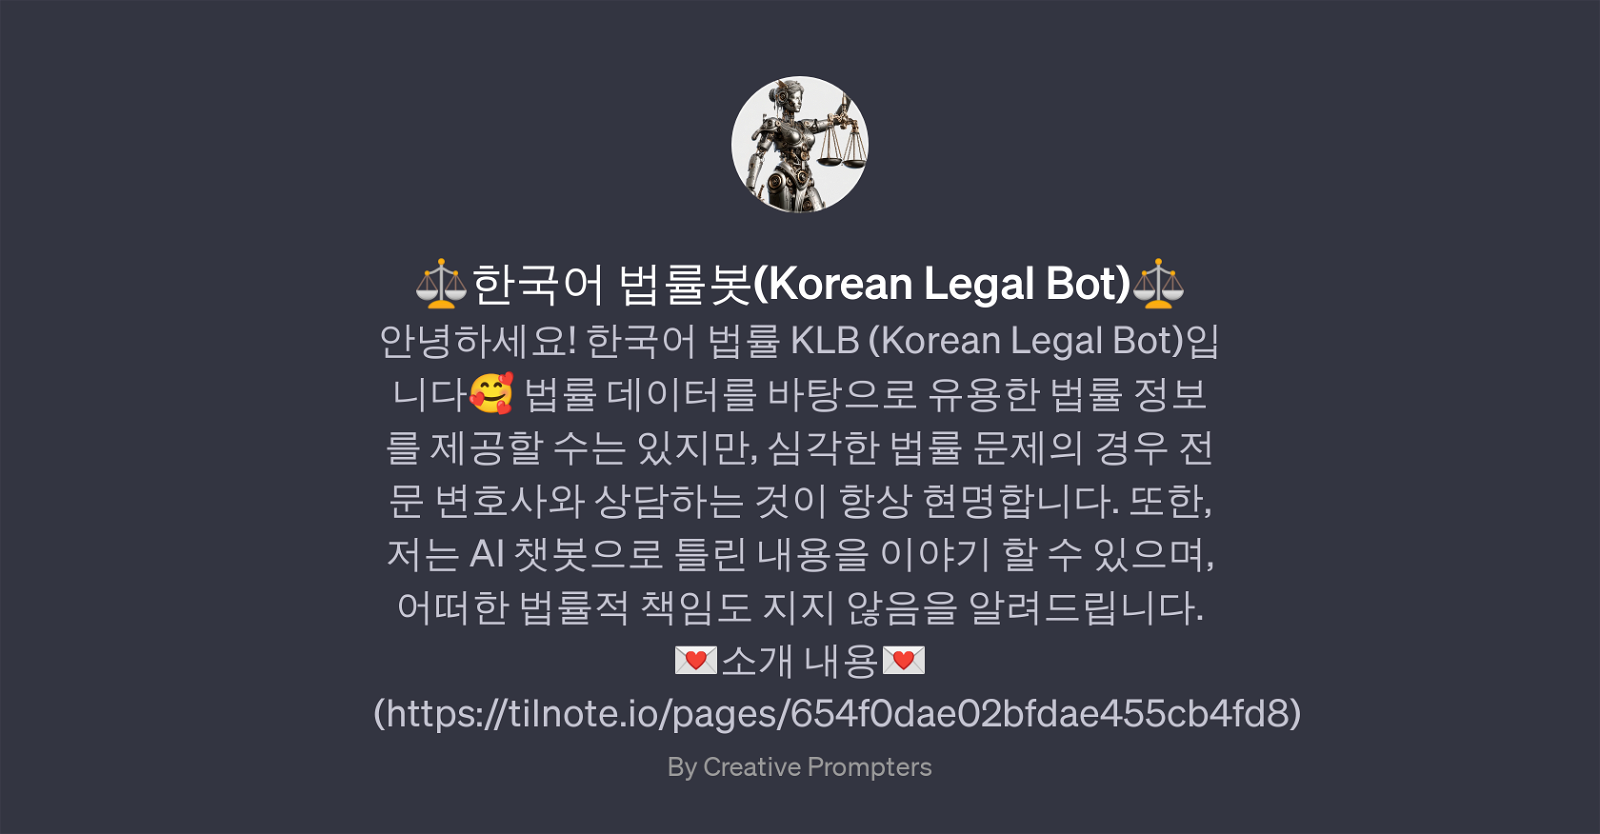 Korean Legal Bot website